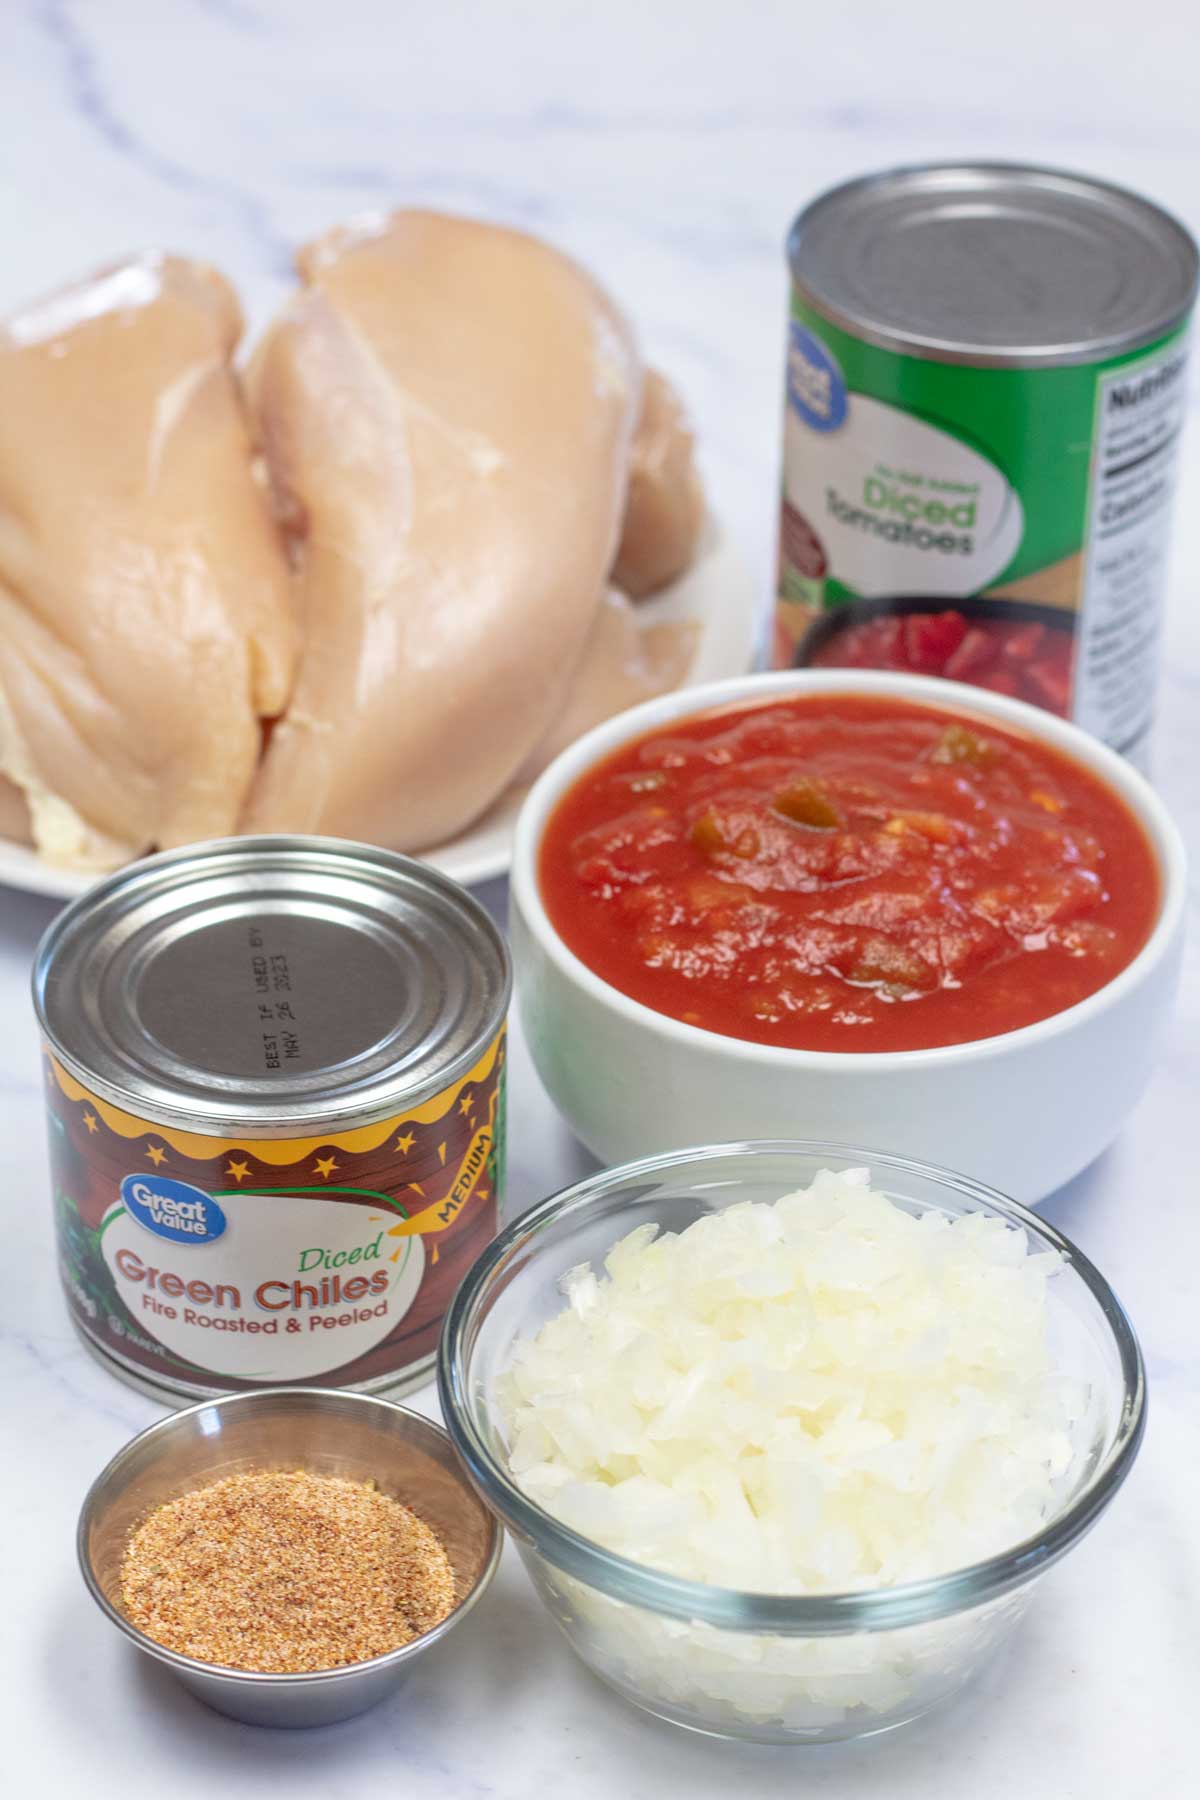 Immagine alta che mostra gli ingredienti necessari per i tacos di pollo crockpot.